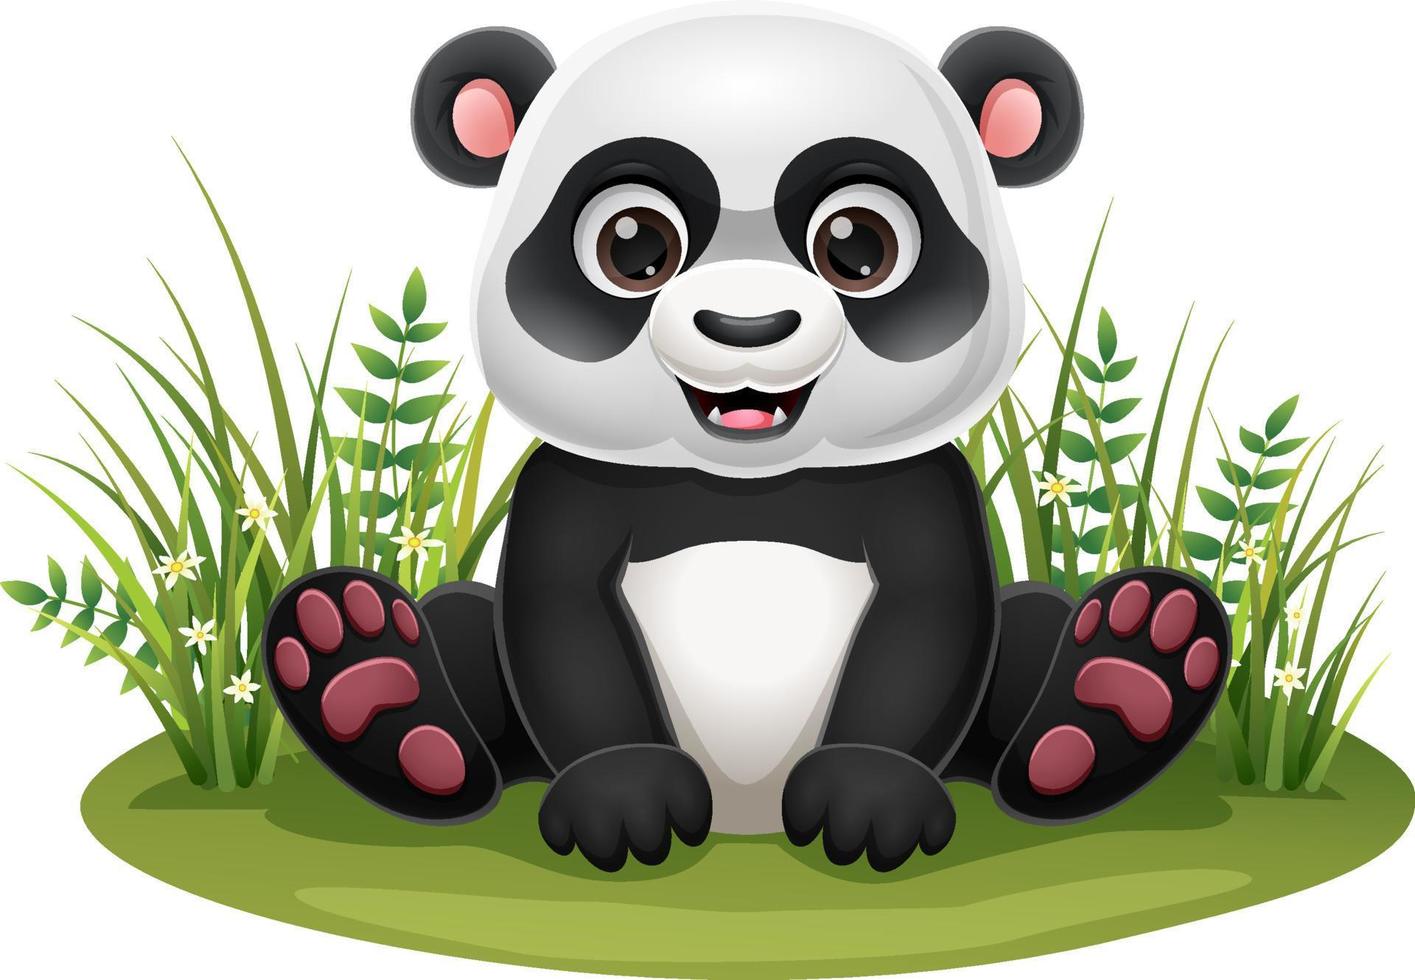 Cute Baby Panda, Kawaii Panda Sitting 13530814 Vector Art at Vecteezy